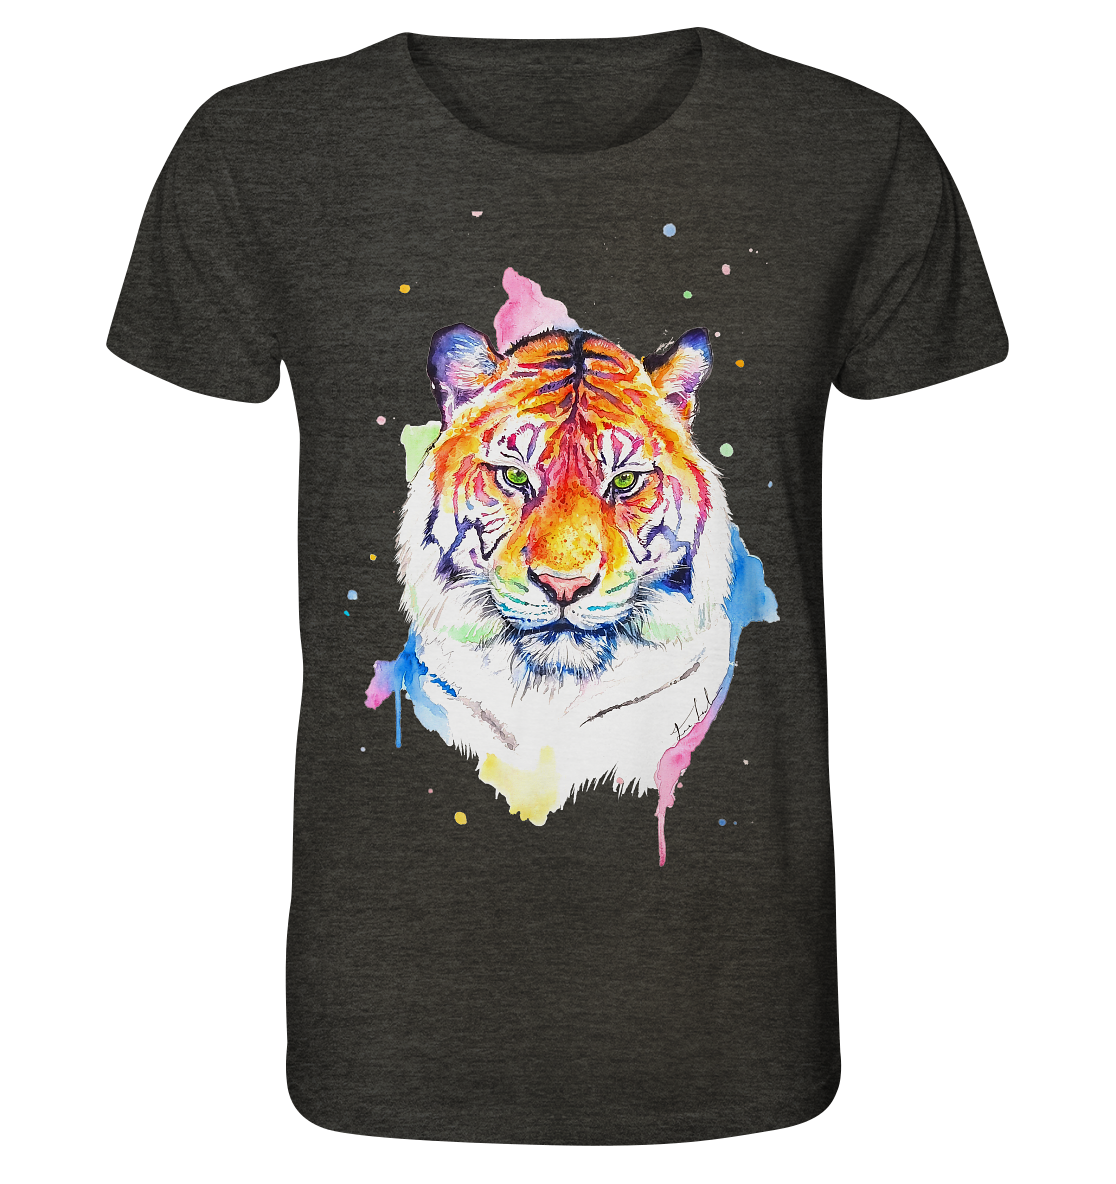 Bunter Tiger - Organic Shirt (meliert)